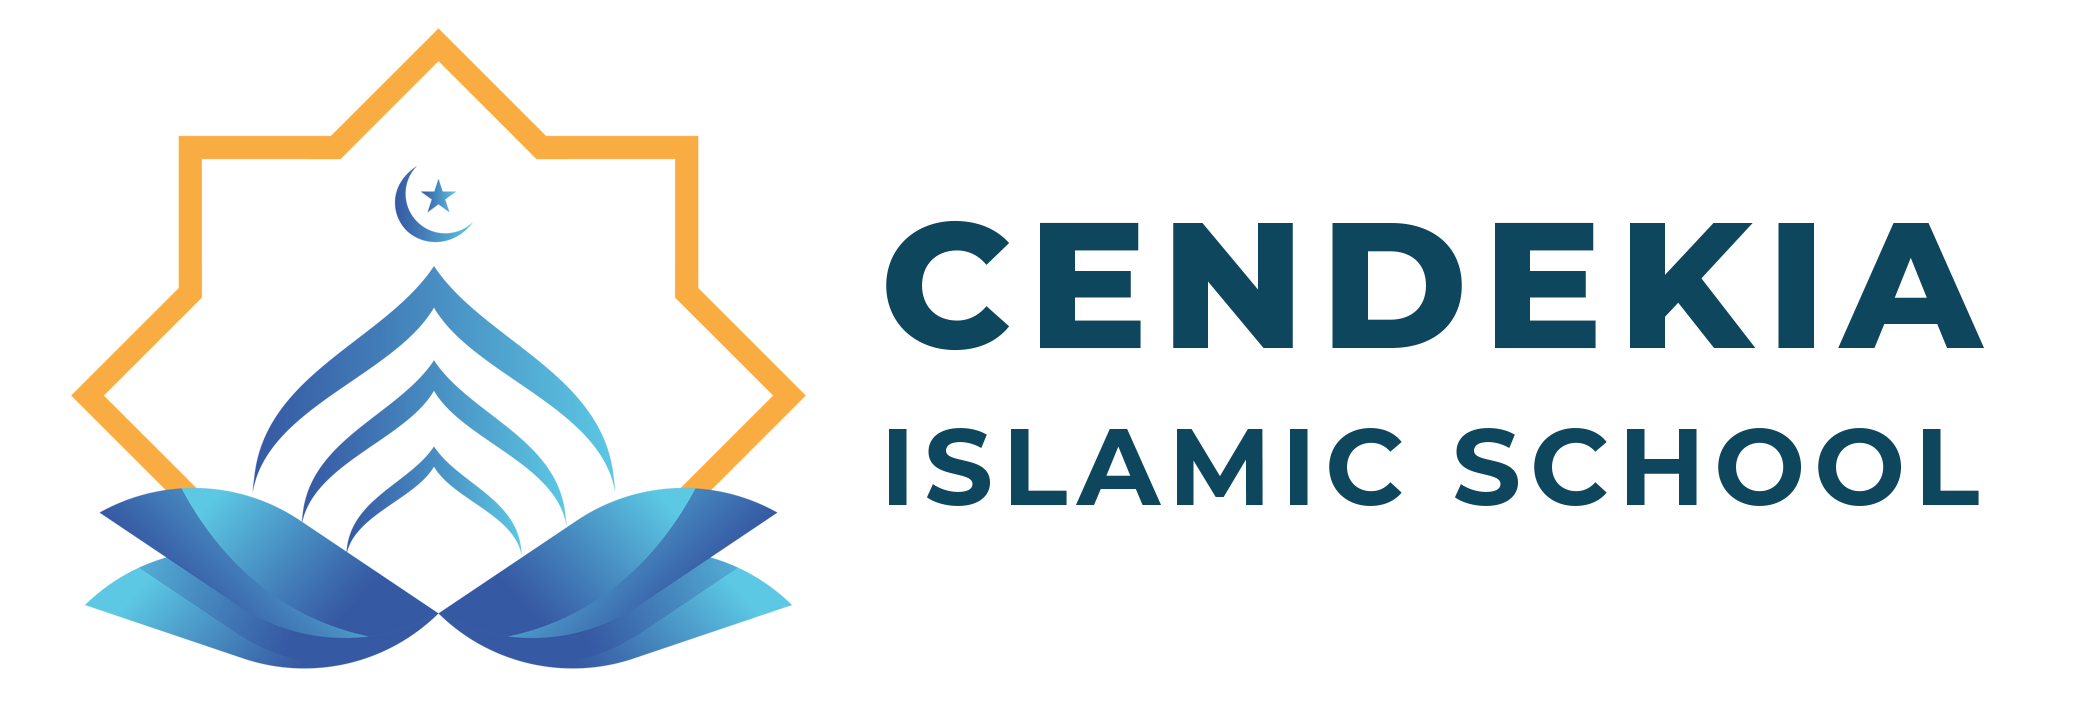 Logo cendekia islamic 1